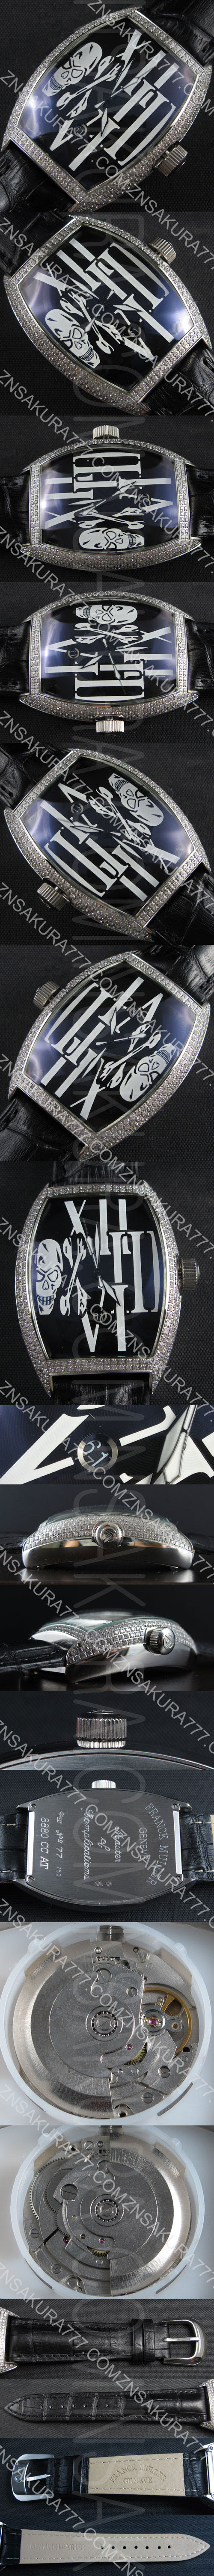 高級感腕時計 FRANCK MULLER マスター コンプリケーション 自動巻き ダークブルーダイヤル ドクロ印刷